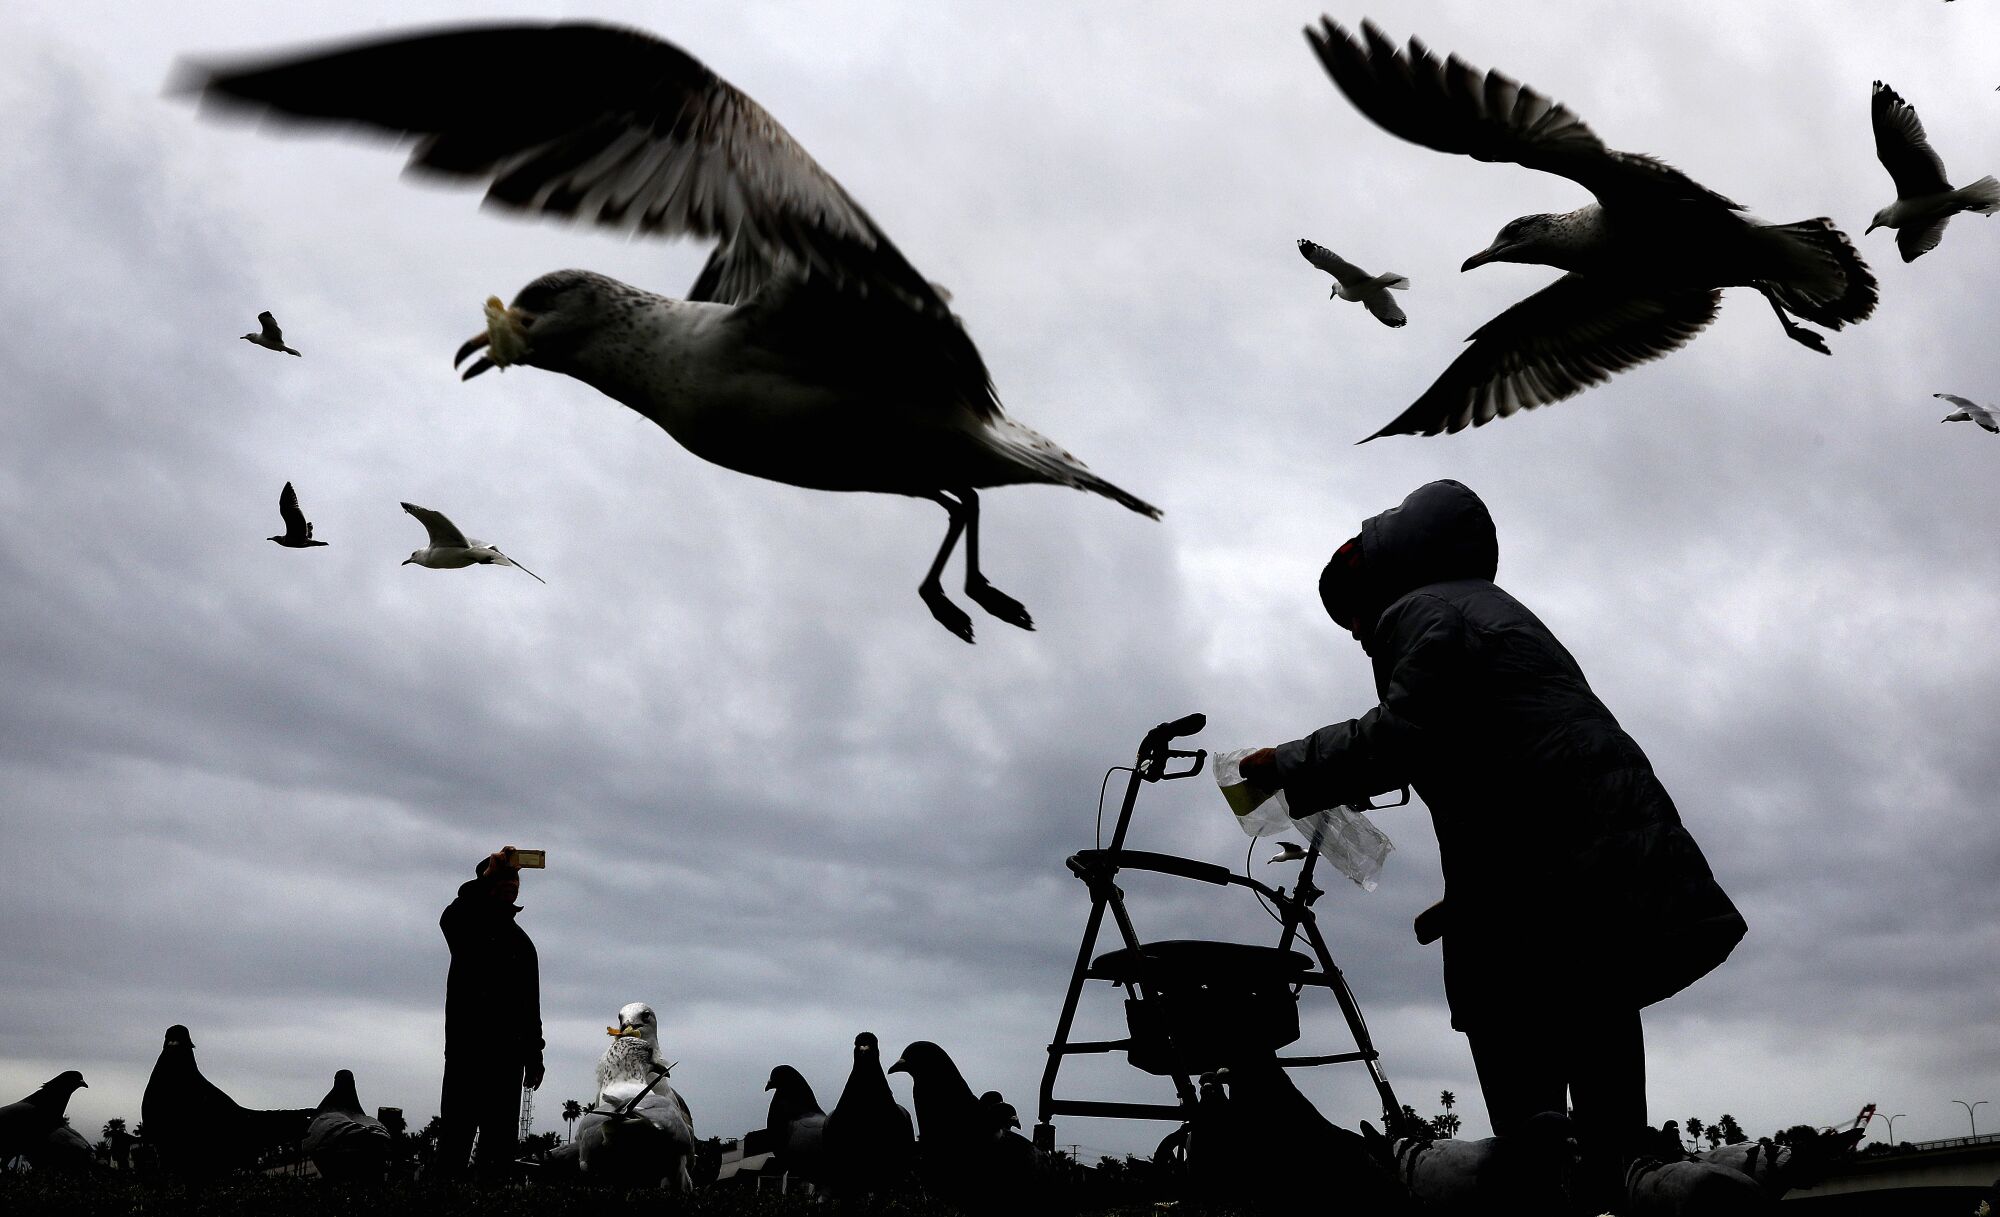 ينظر شخصان في صورة ظلية مقابل سماء رمادية داكنة غائمة ، يغذي شخصان طيور النورس المحتشدة.  